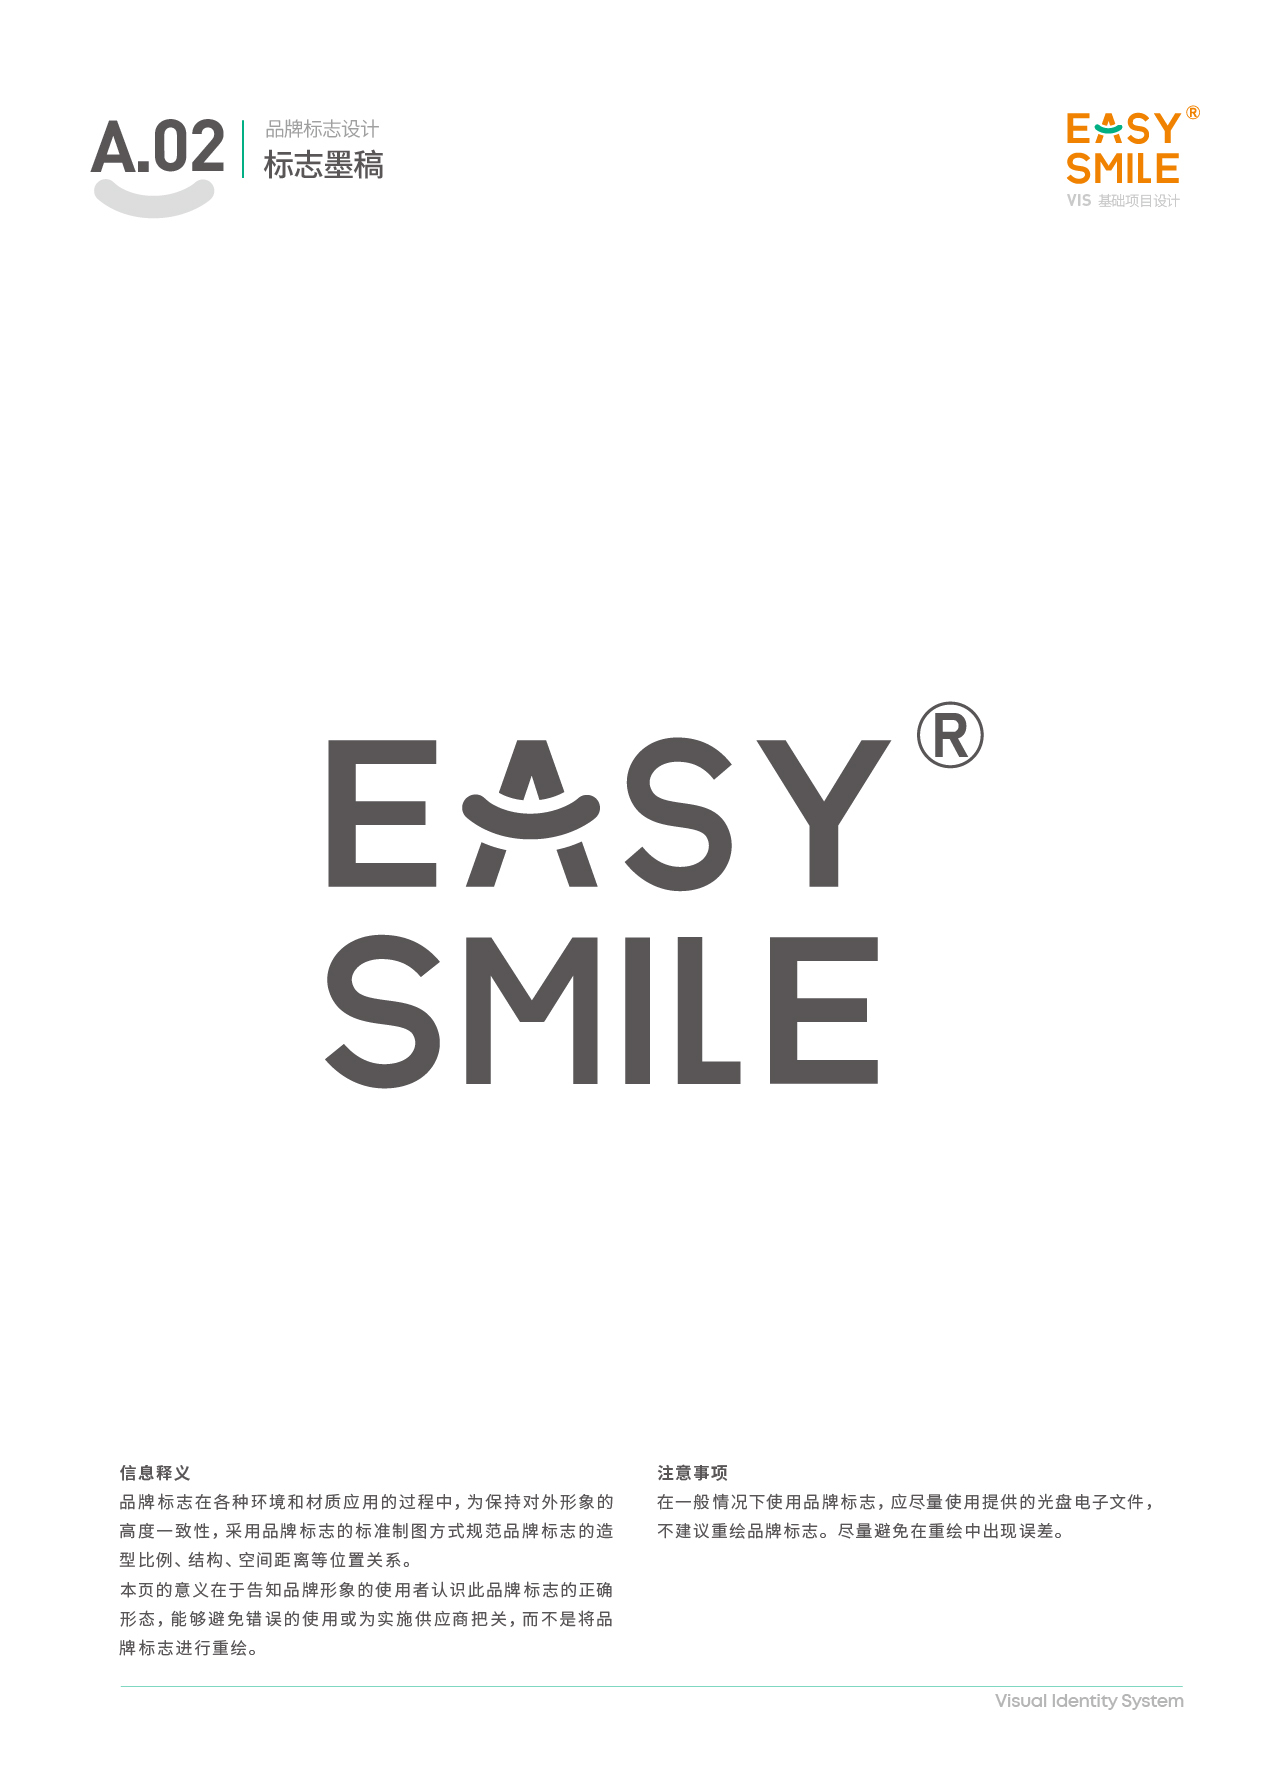 Easysmile 轻松笑品牌VIS图5